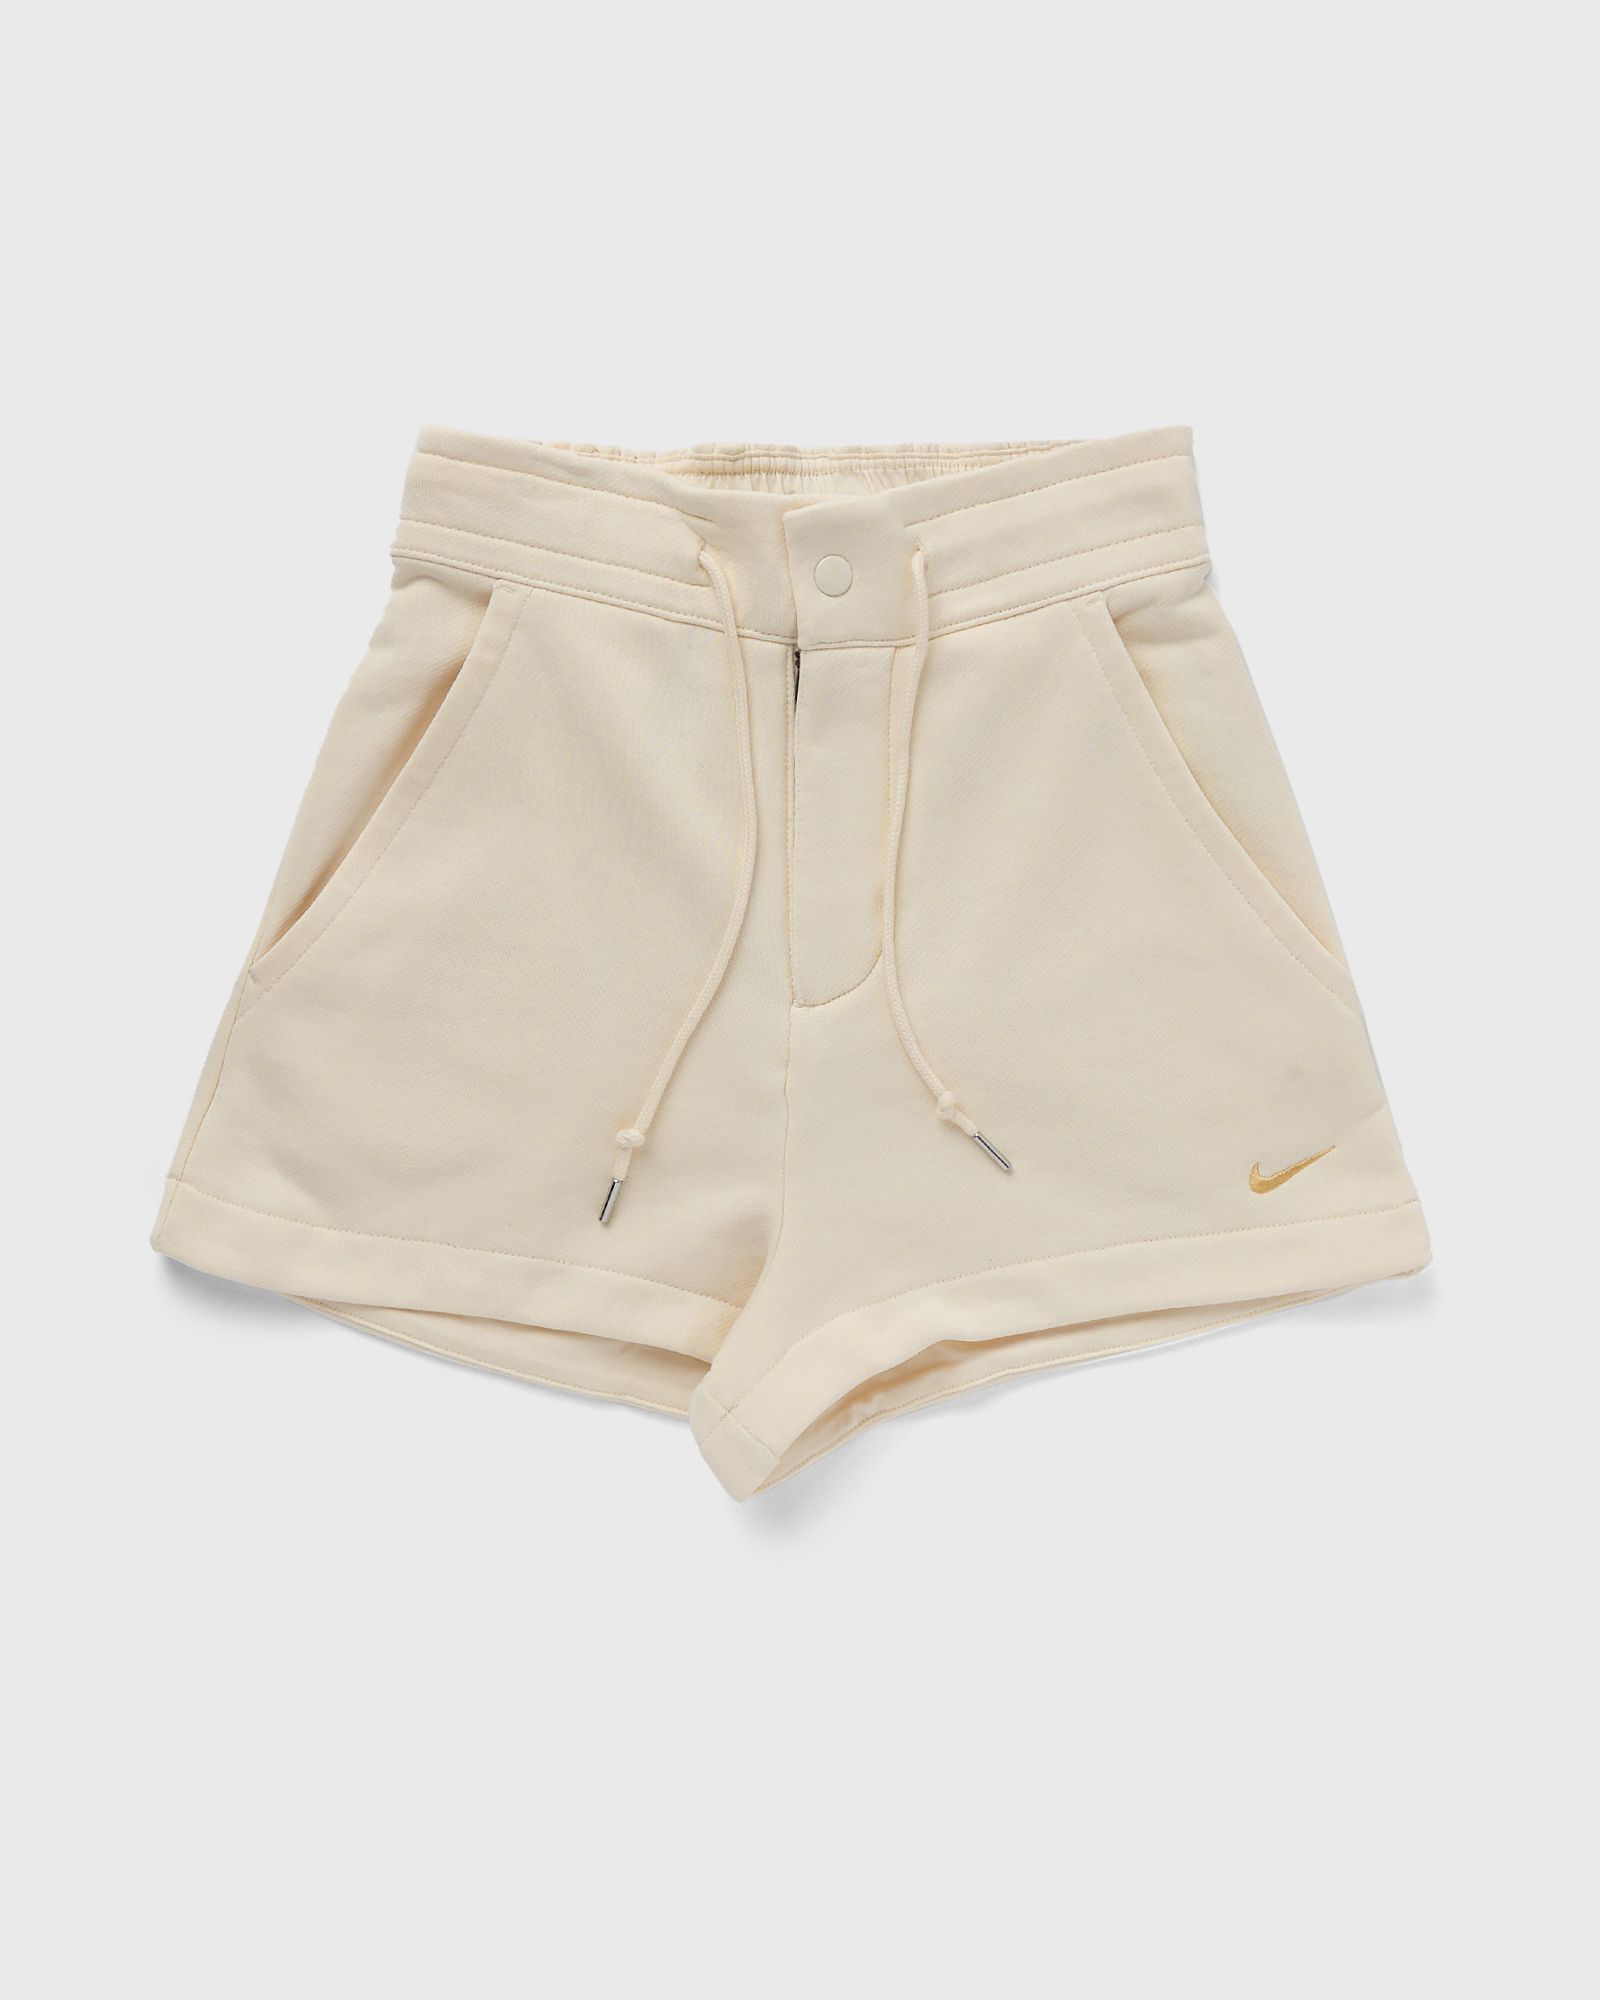 Nike - wmns modern fleece french-terry loose shorts women sport & team shorts beige in größe:l